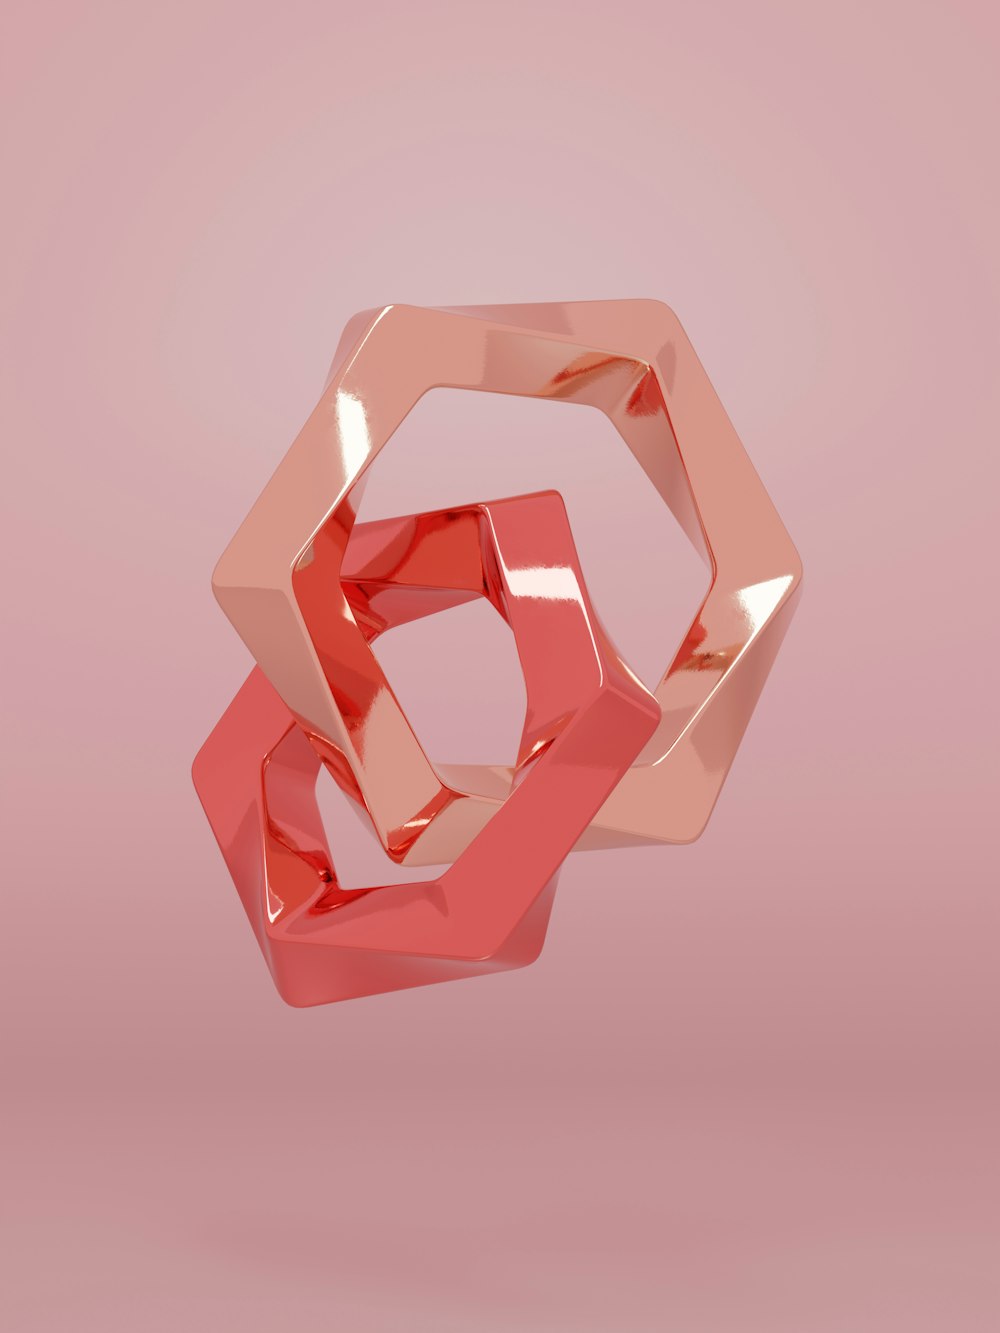 Une image 3D d’un objet rose sur fond rose